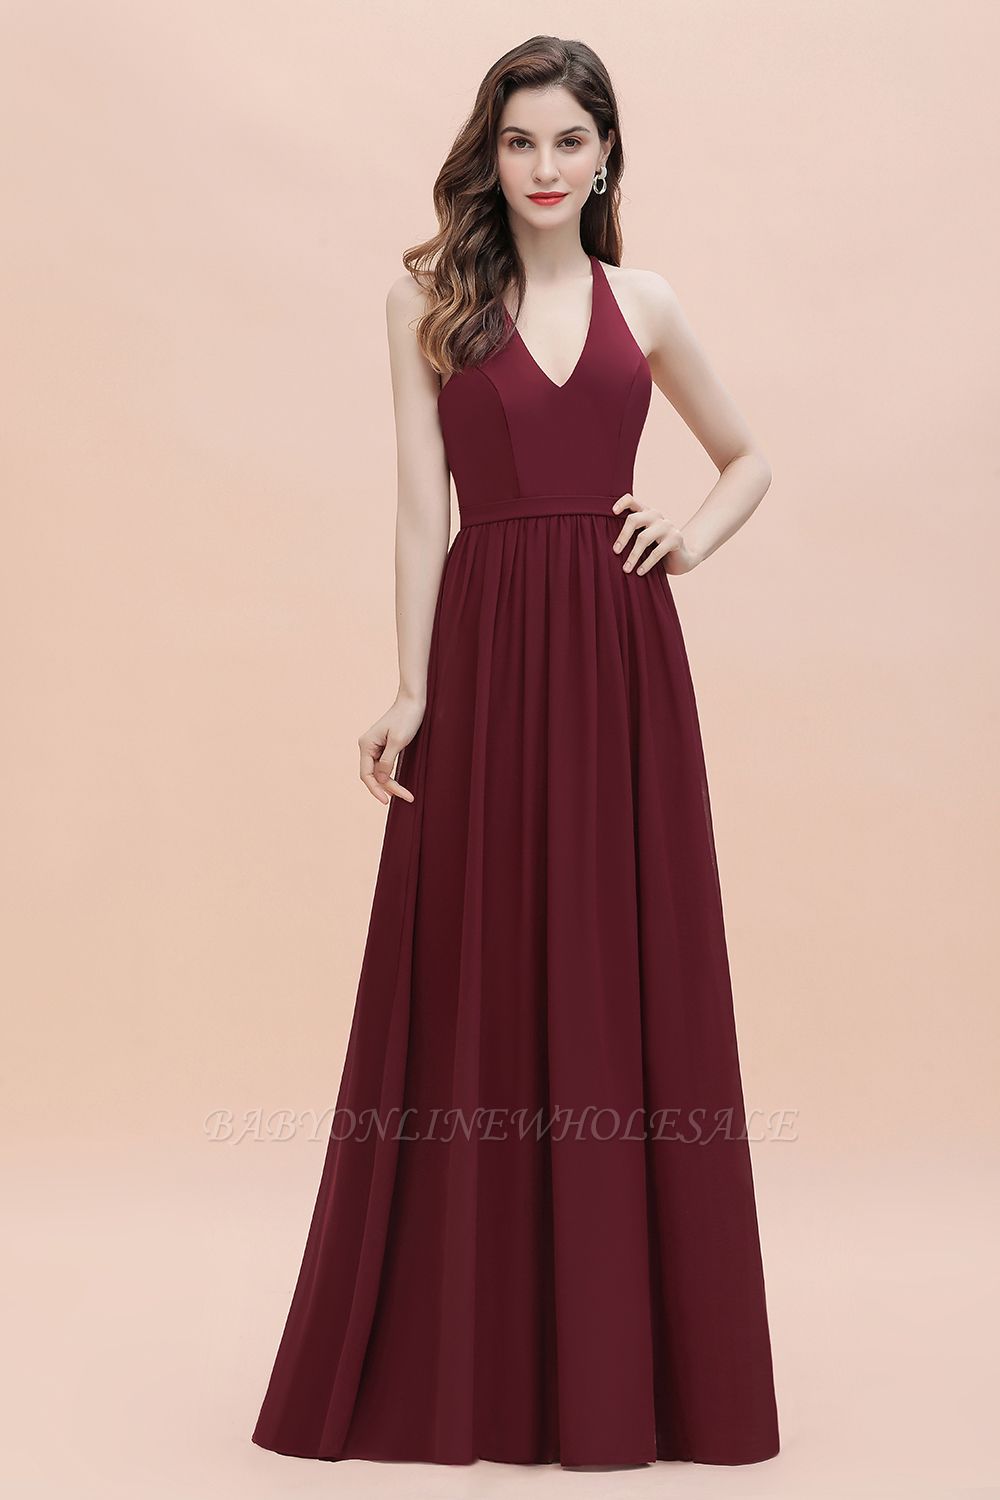 Темно-красное шифоновое платье с V-образным вырезом и бисером на спине без рукавов